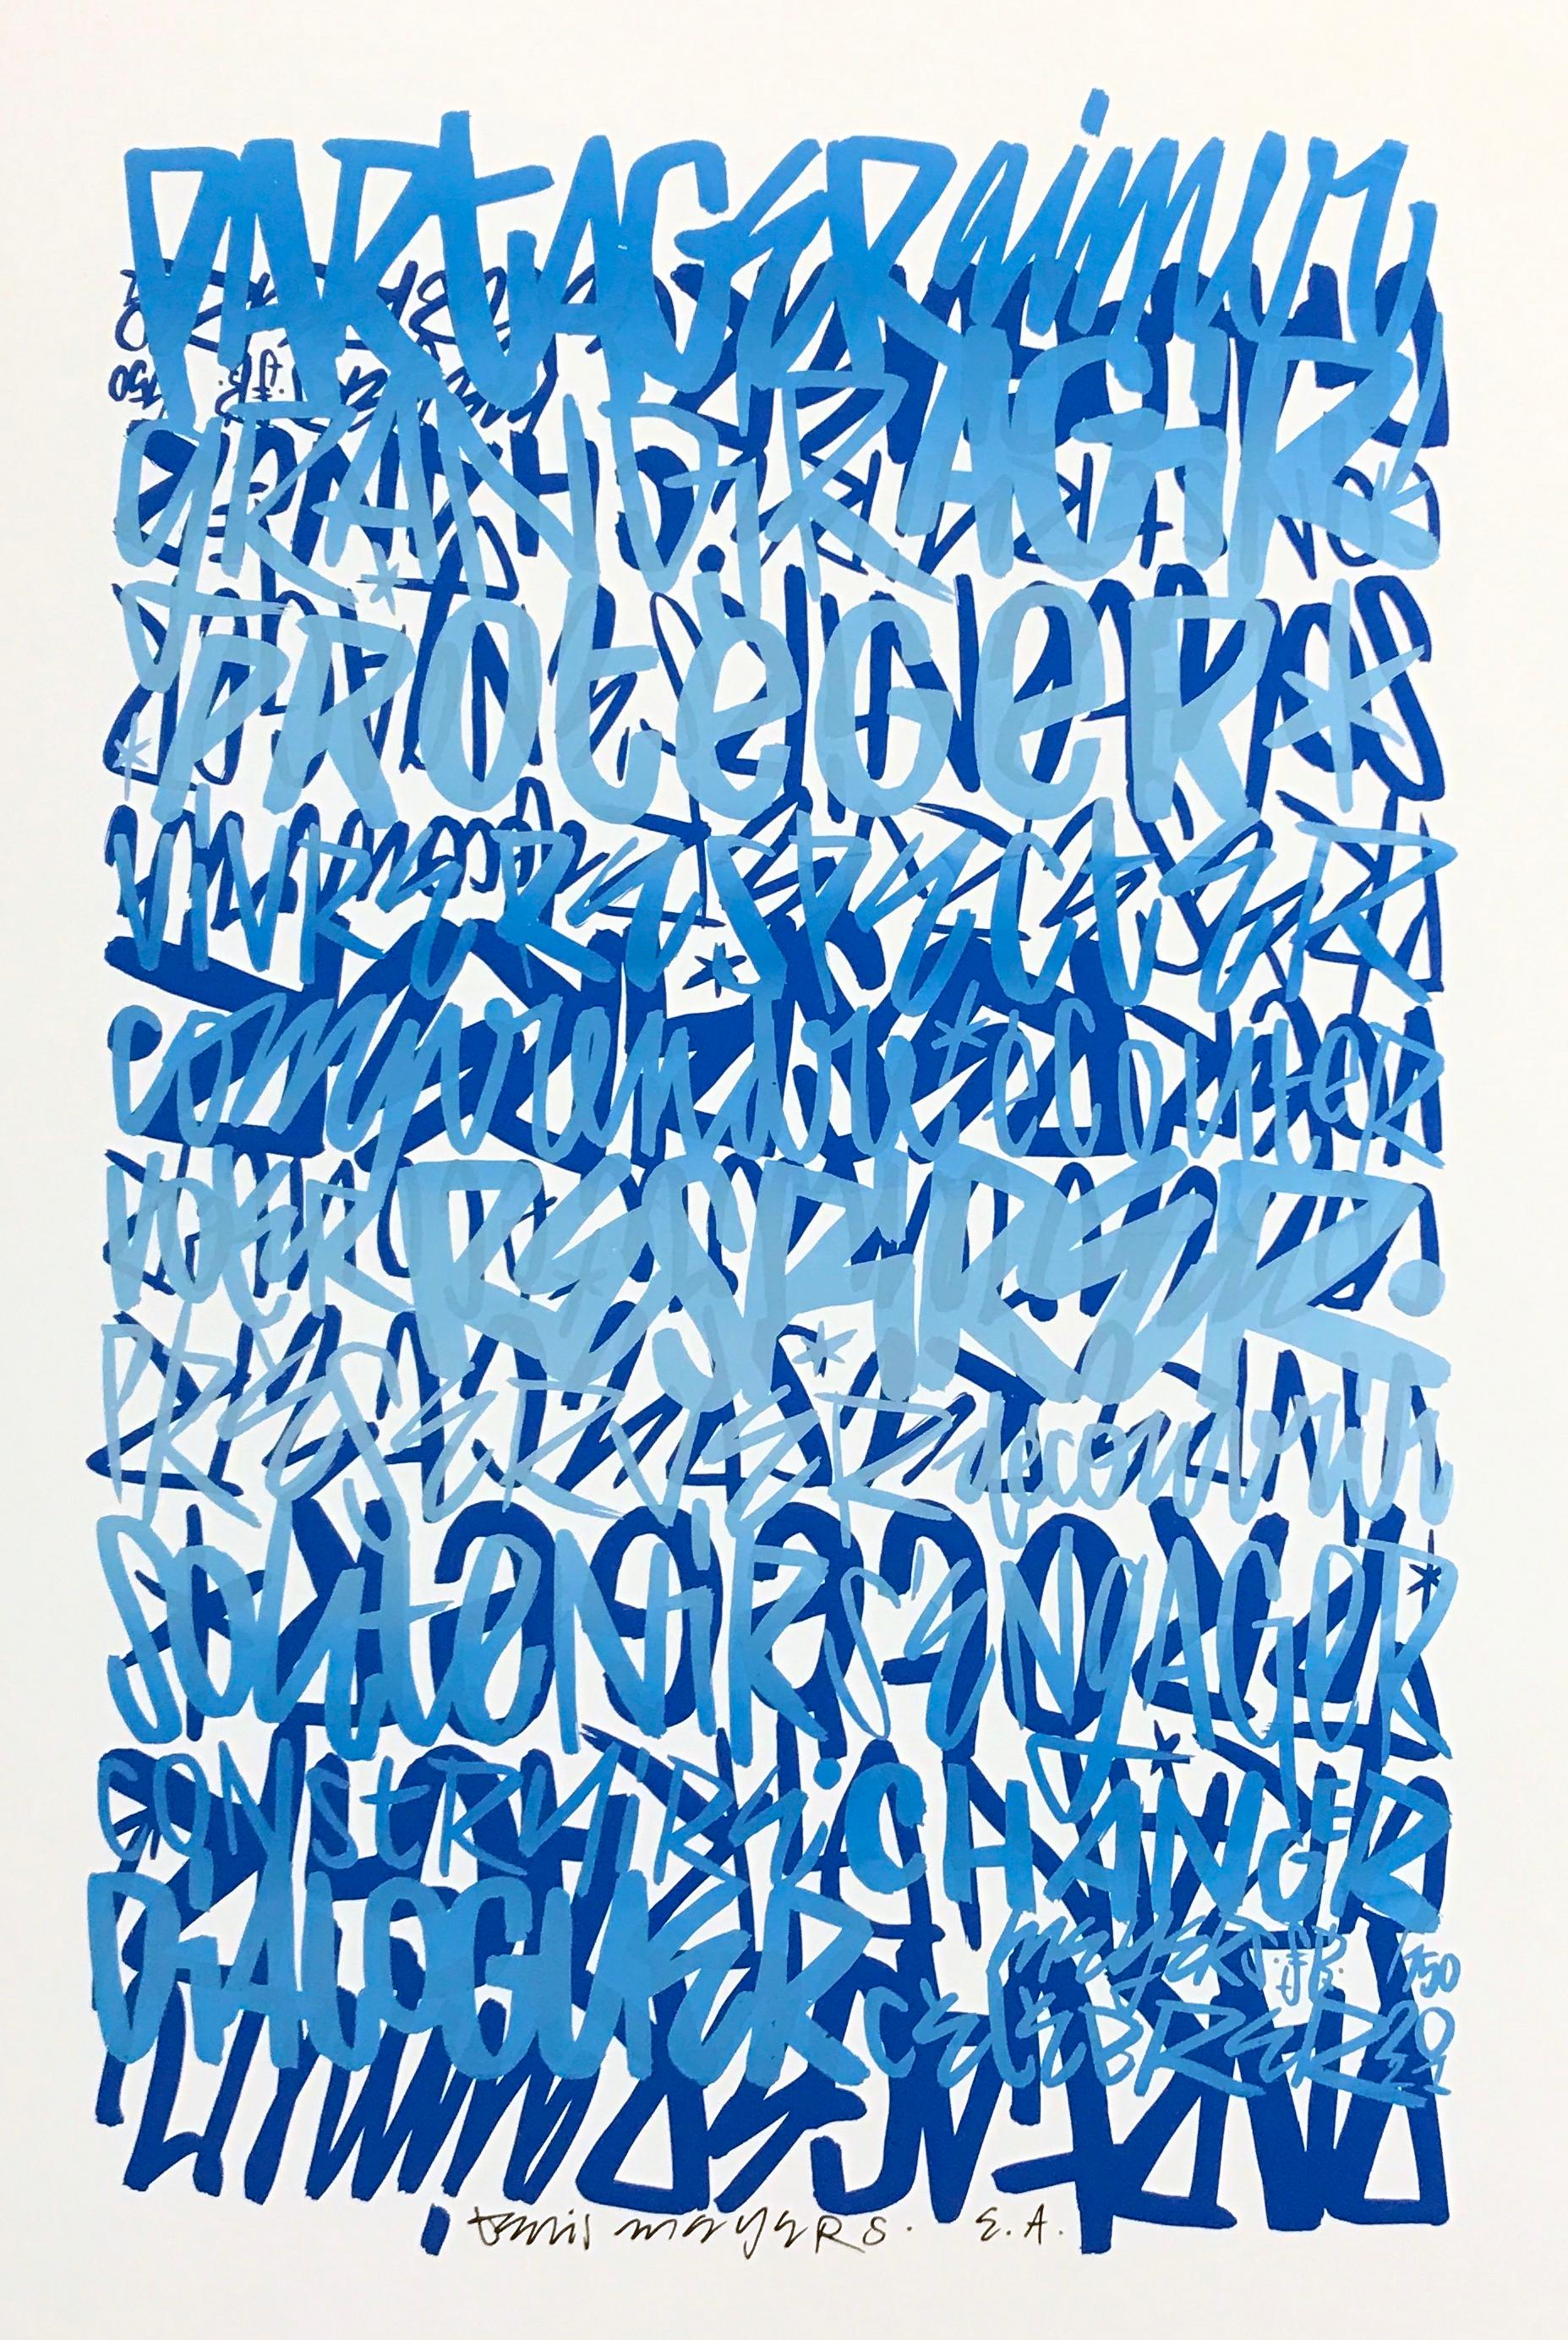 Ein Druck nach einer Originalzeichnung von Denis Meyers - Künstlerabzug aus einer Auflage. Der Druck auf Papier zeigt einige von Denis Meyers "Word Patterns", die mit blauer Tinte übereinander gedruckt wurden. Wird flach geliefert und kann auf